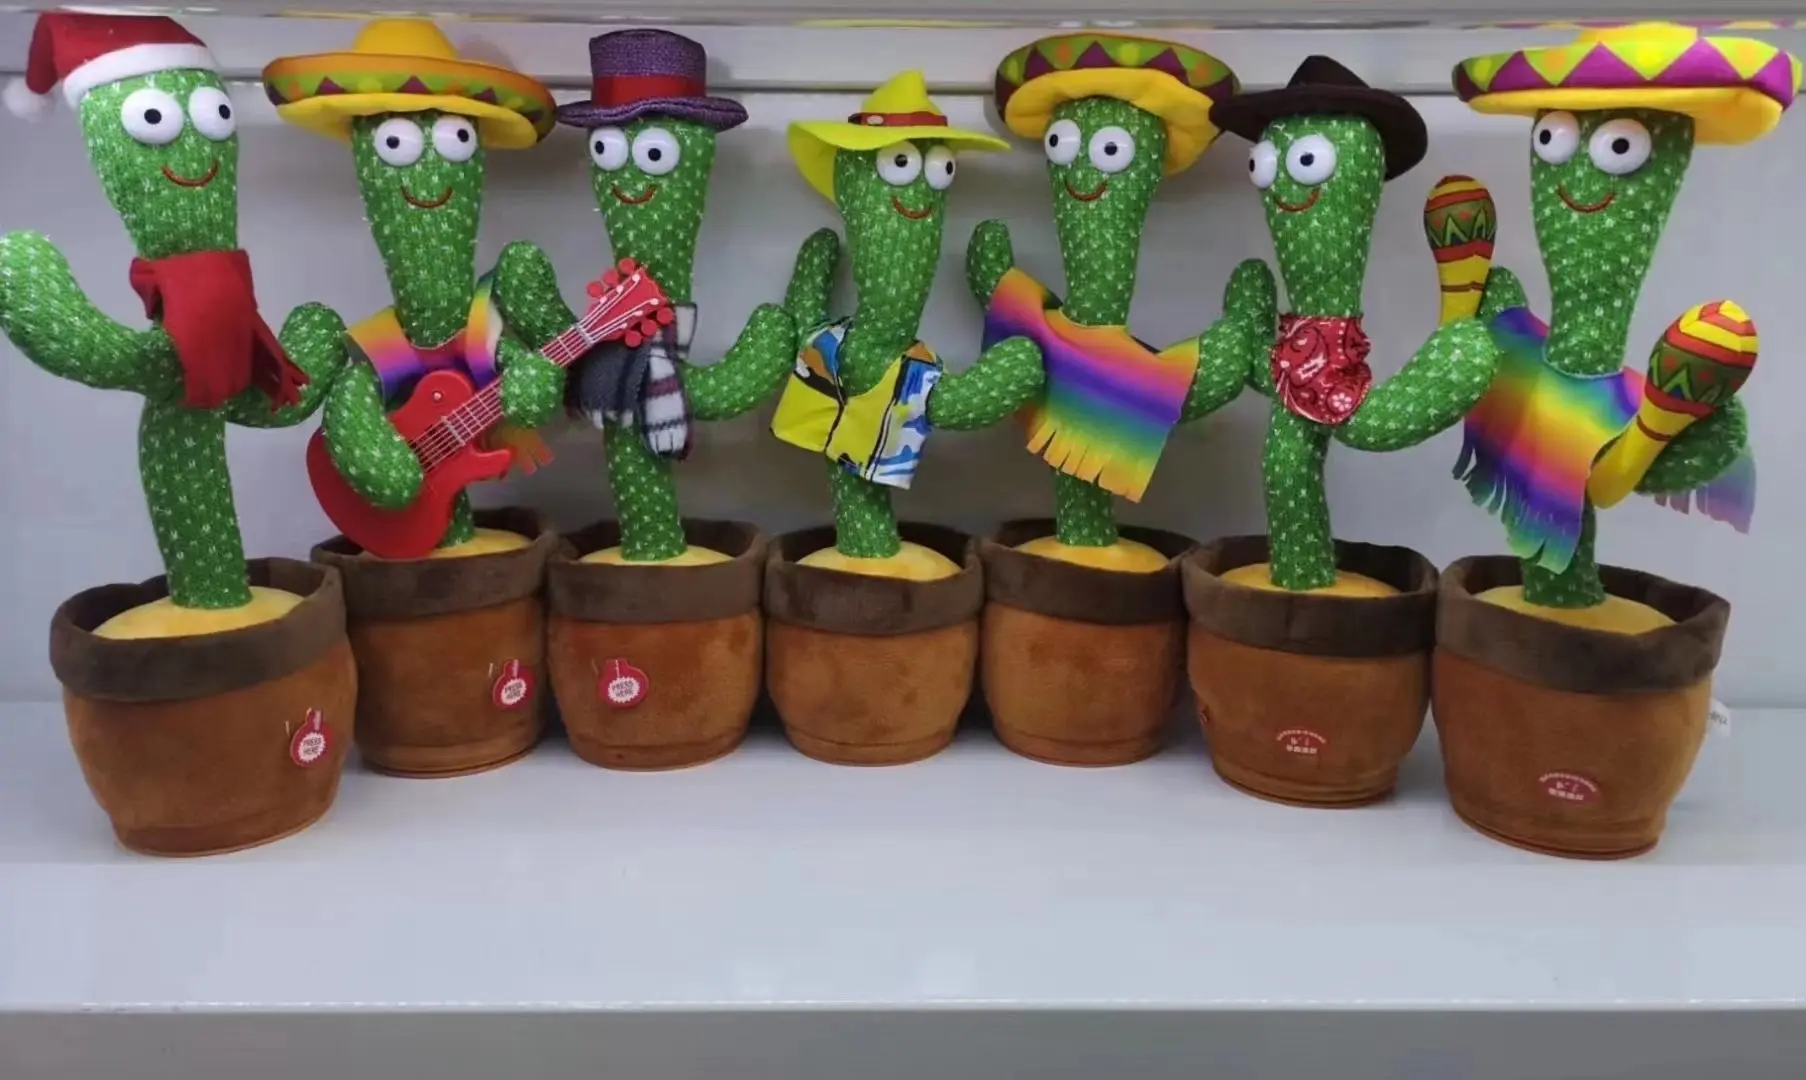 Top Fashion cactus Doll Talking Game Singing Plush Toy Recording Musical Toy Dancing Cactus